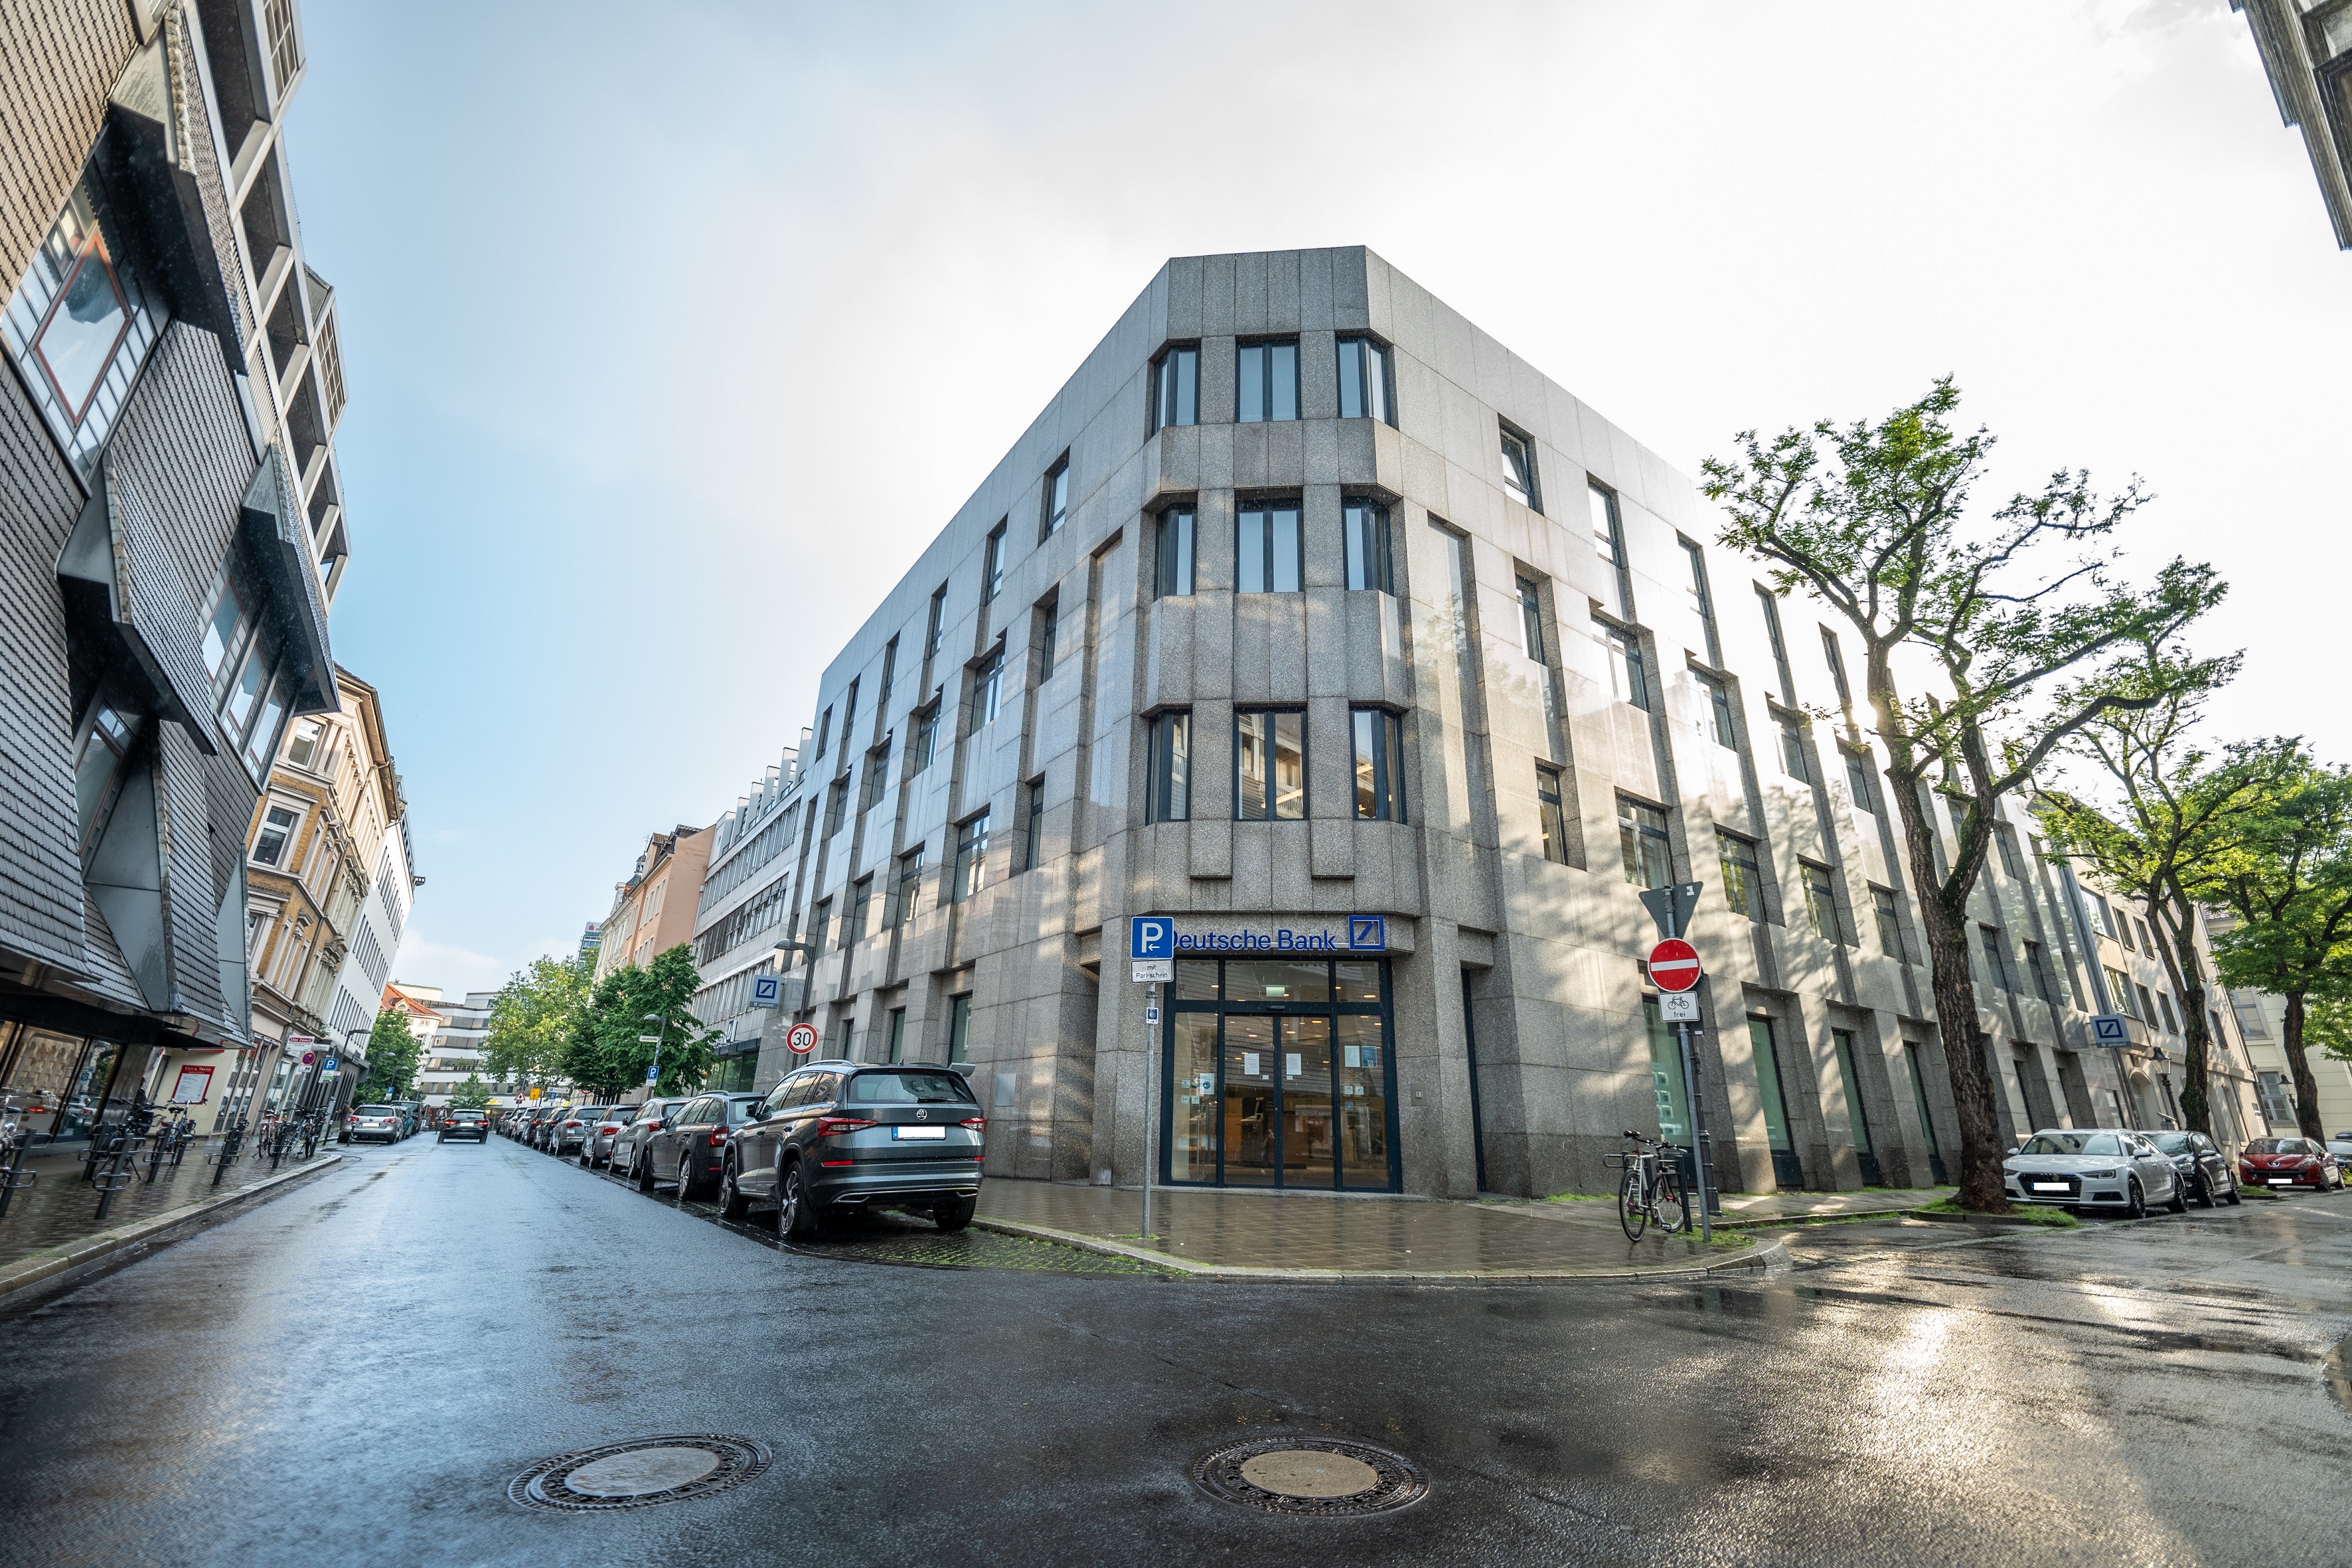 Bild 1 Deutsche Bank Filiale in Braunschweig